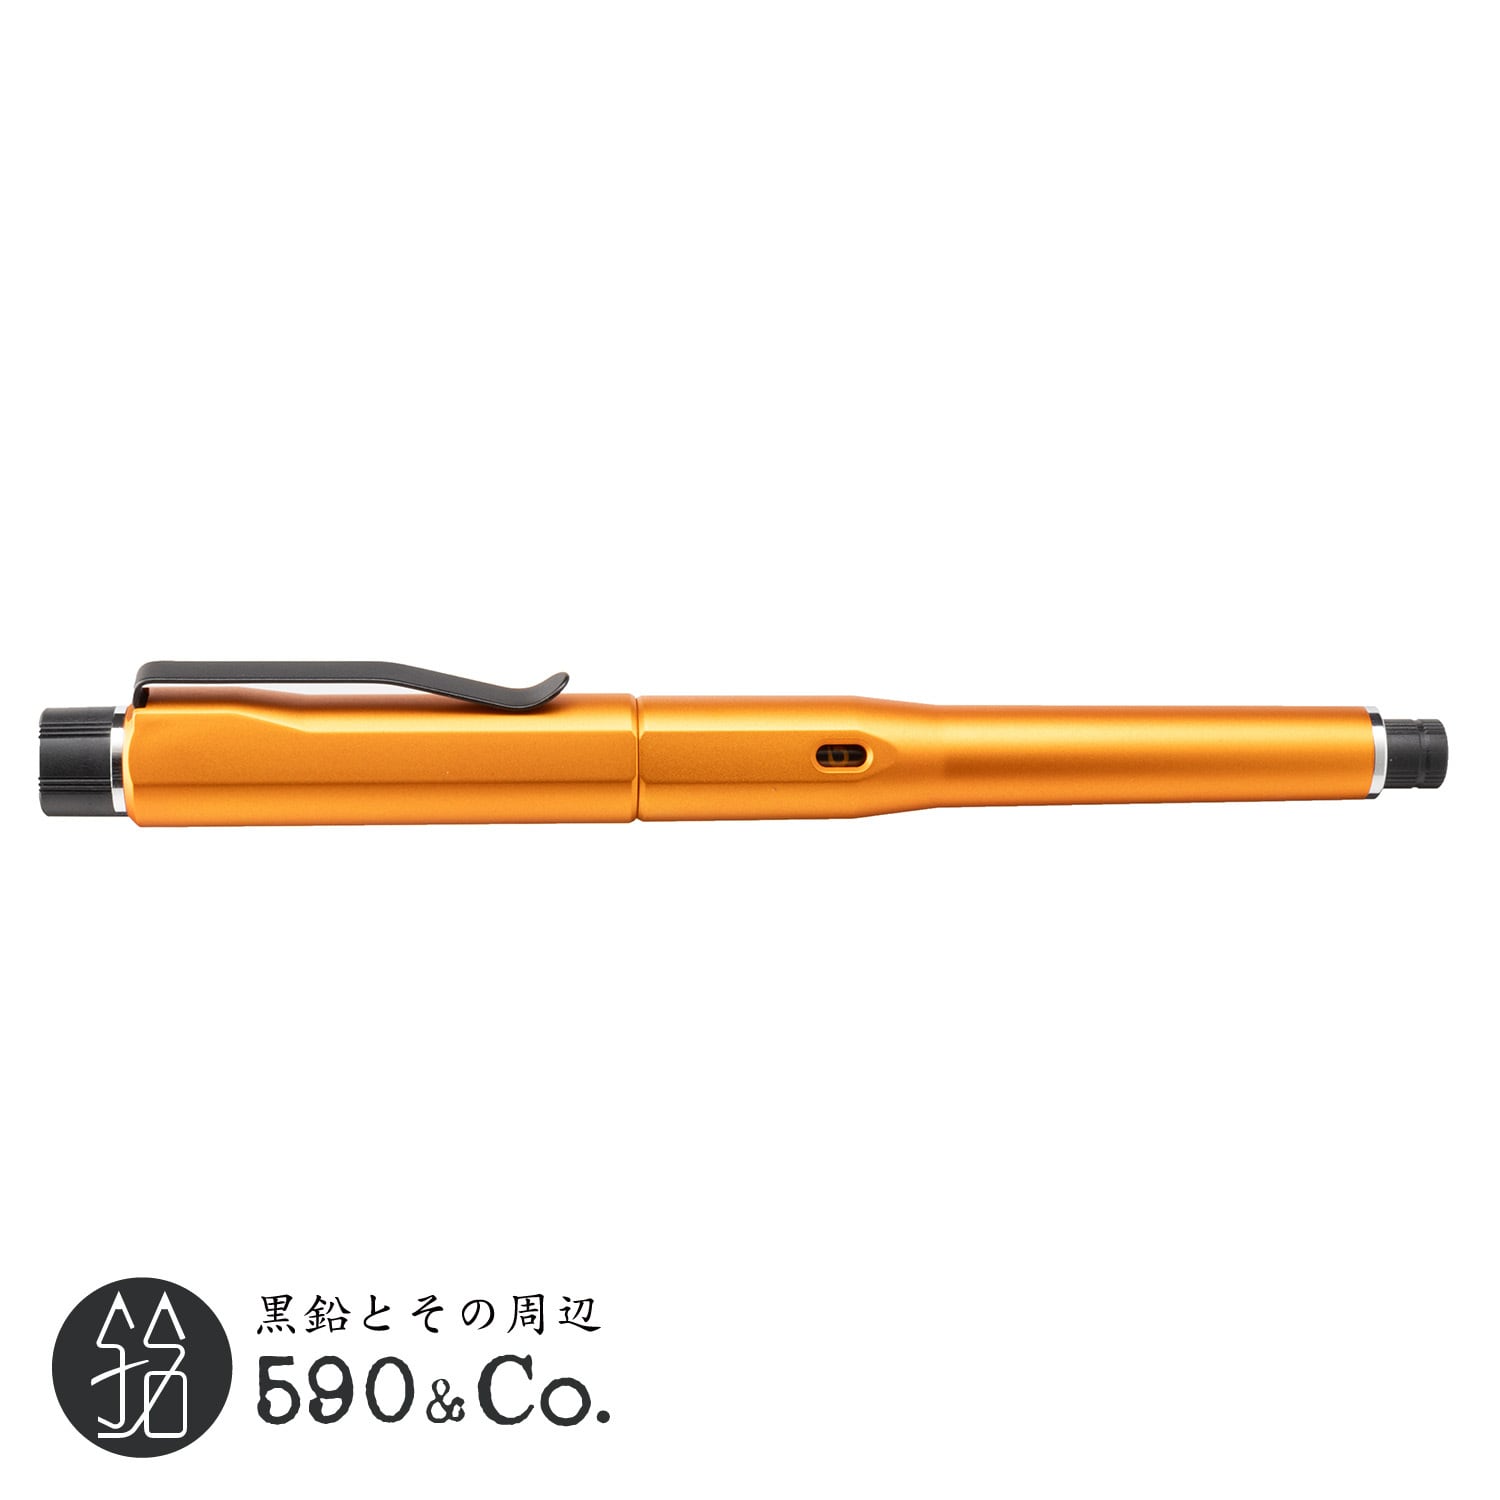 【三菱鉛筆】 クルトガダイブ (トワイライトオレンジ) 590Co.